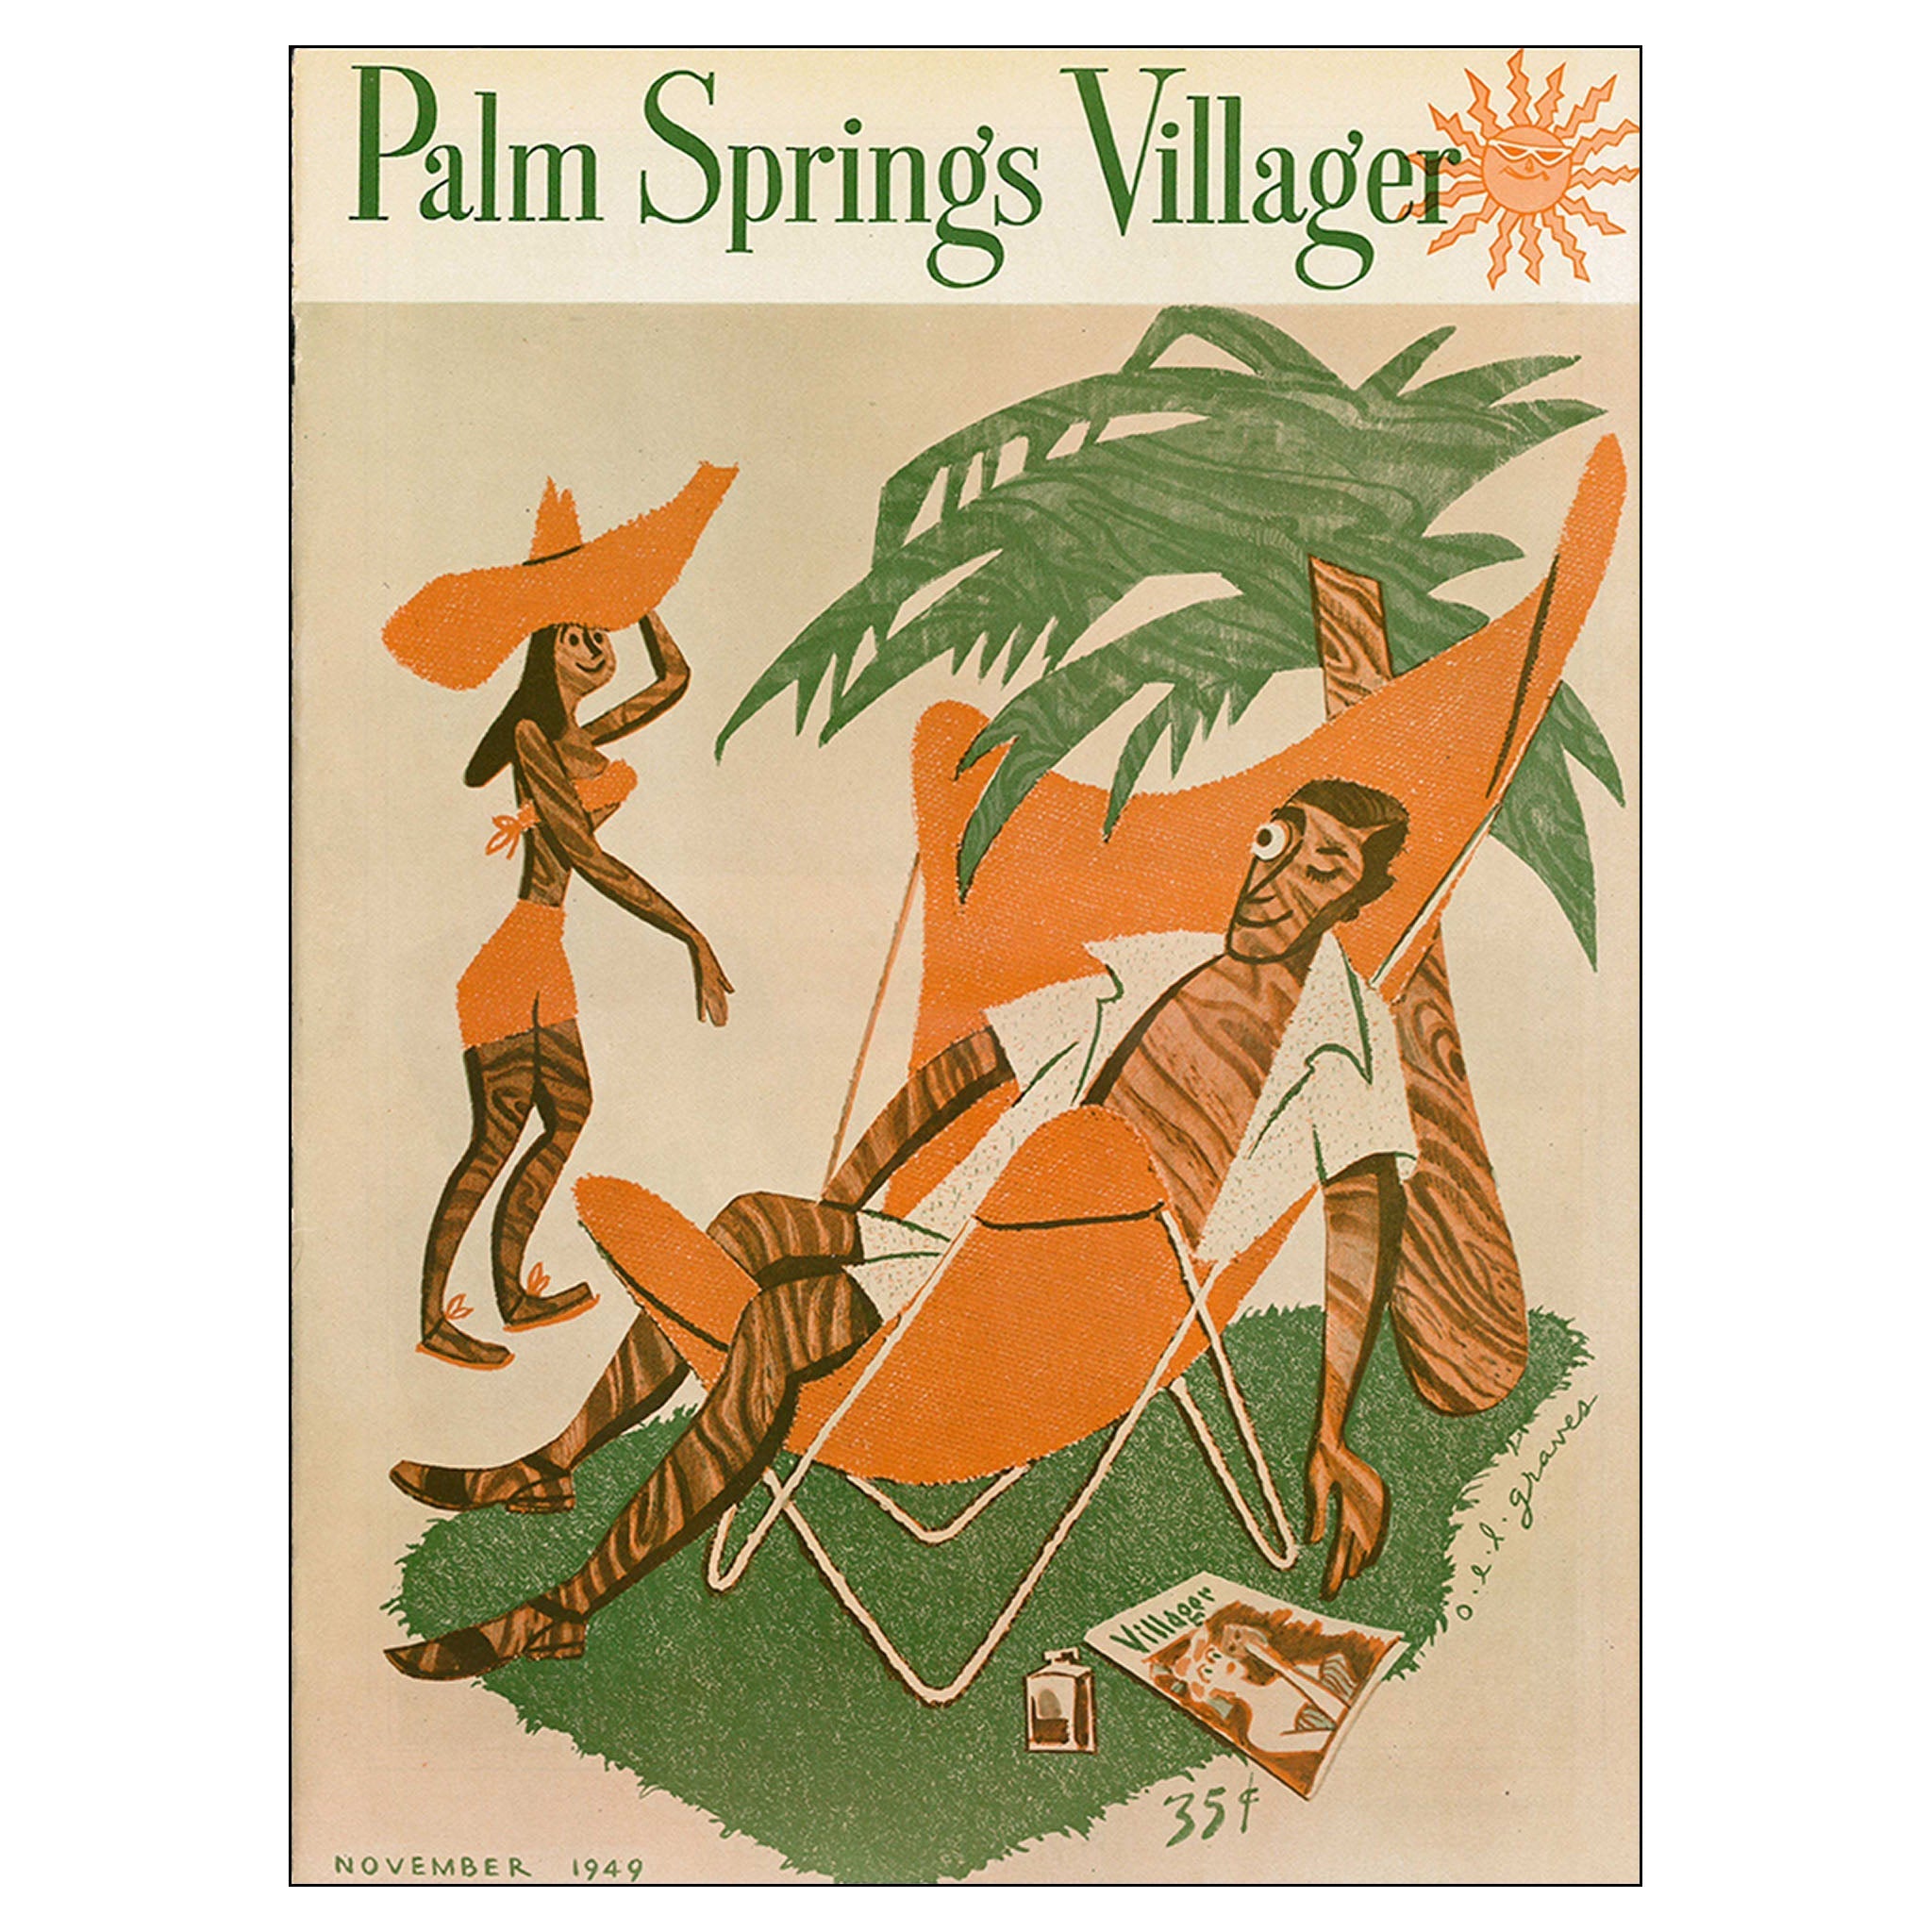 Palm Springs Villager - November 1949 - Cover Poster